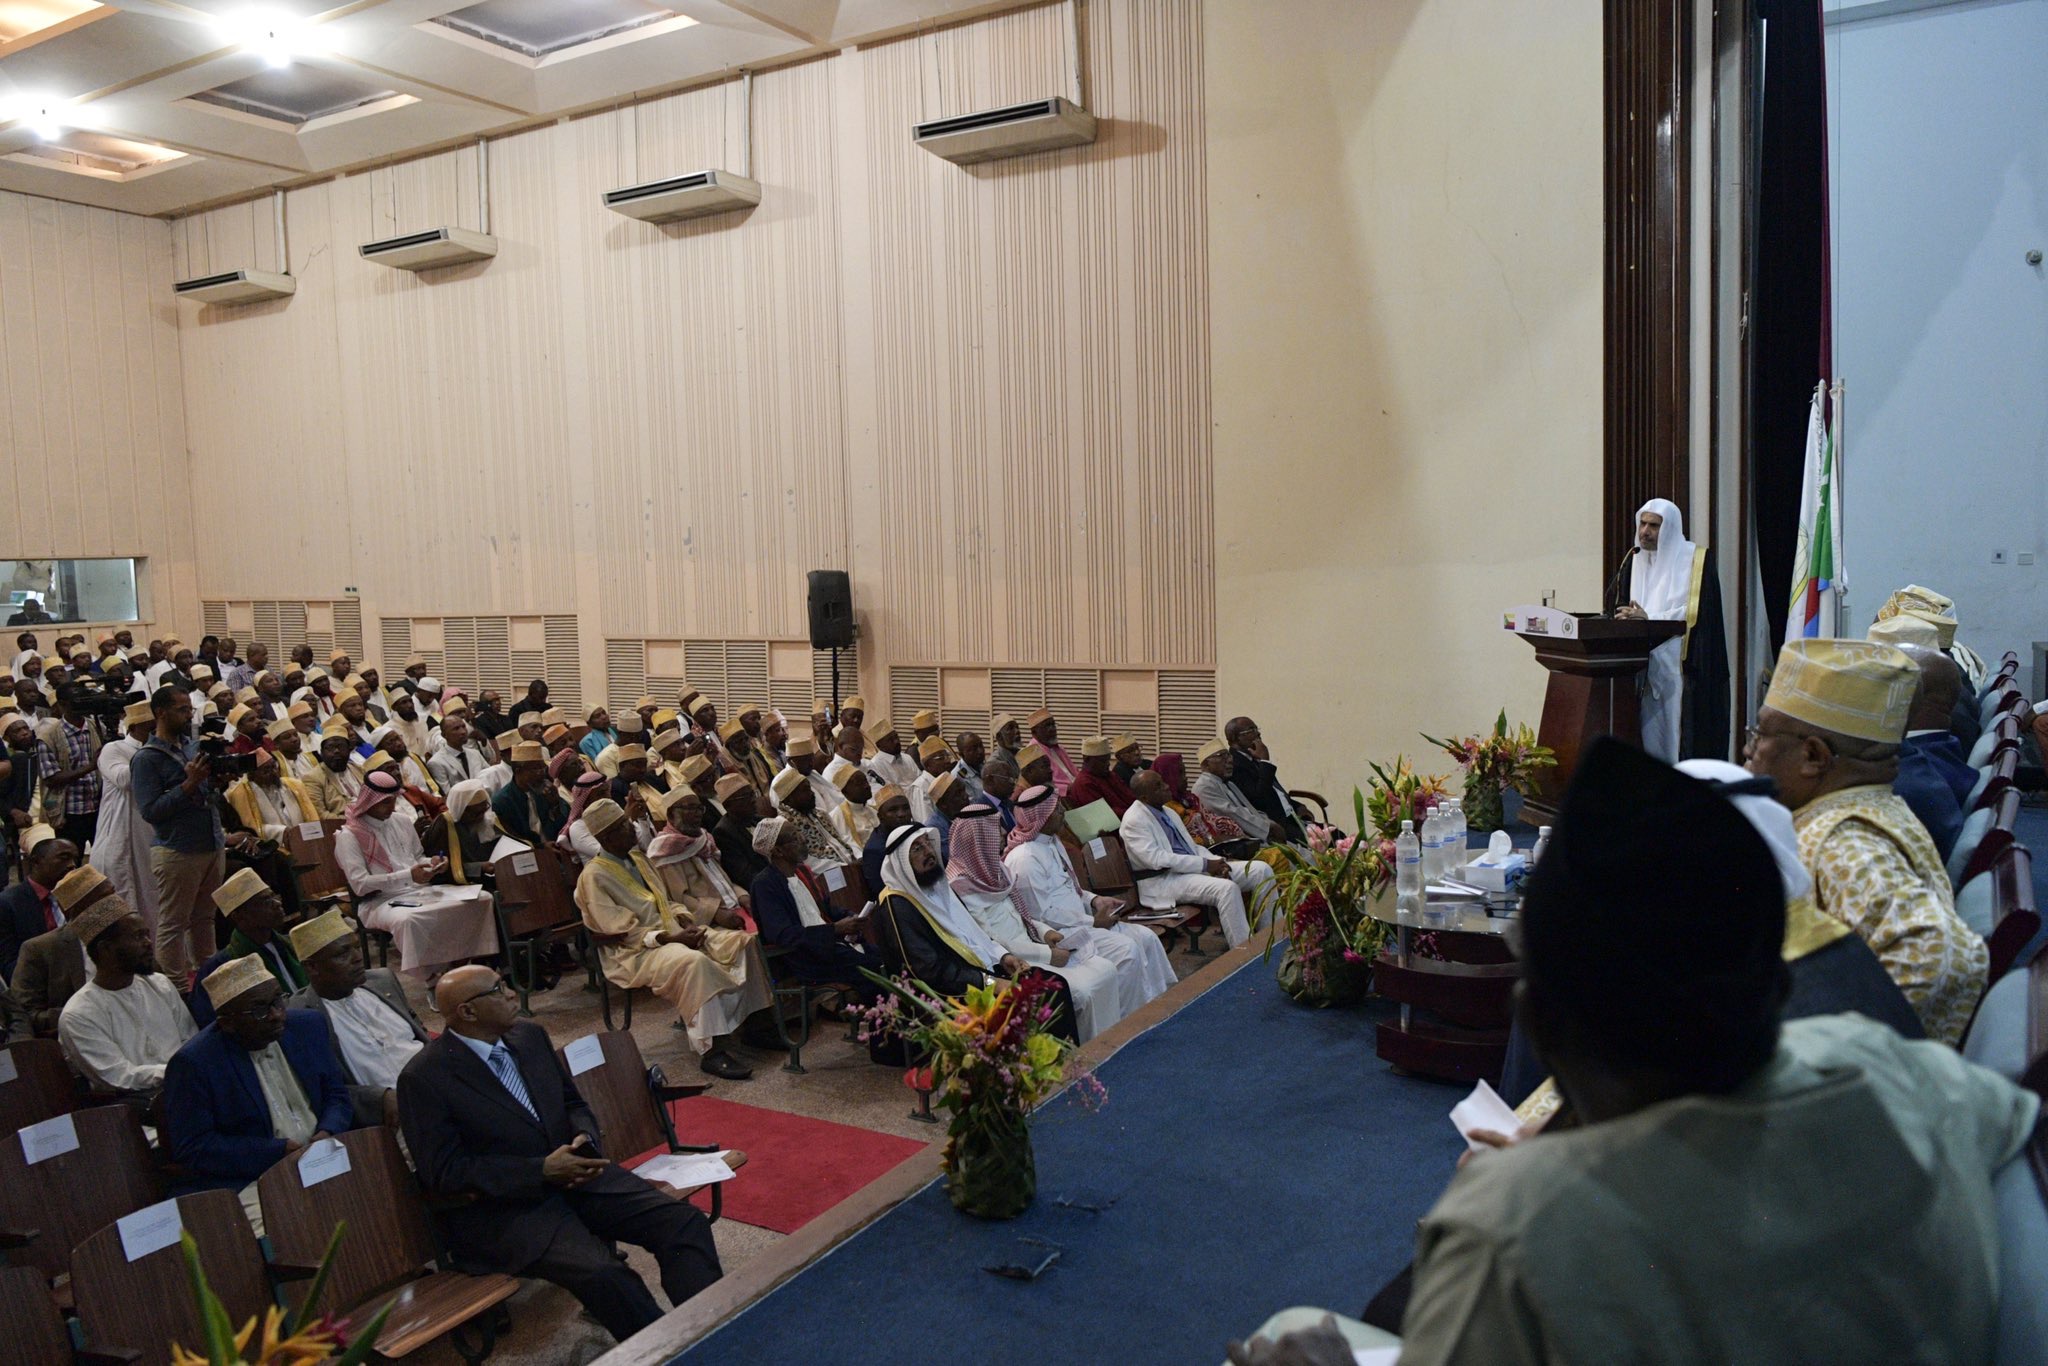 Les savants d’Afrique : le Royaume d’Arabie Saoudite est la référence « spirituelle » et « scientifique » des musulmans, leurs esprits et leurs cœurs y sont liés.